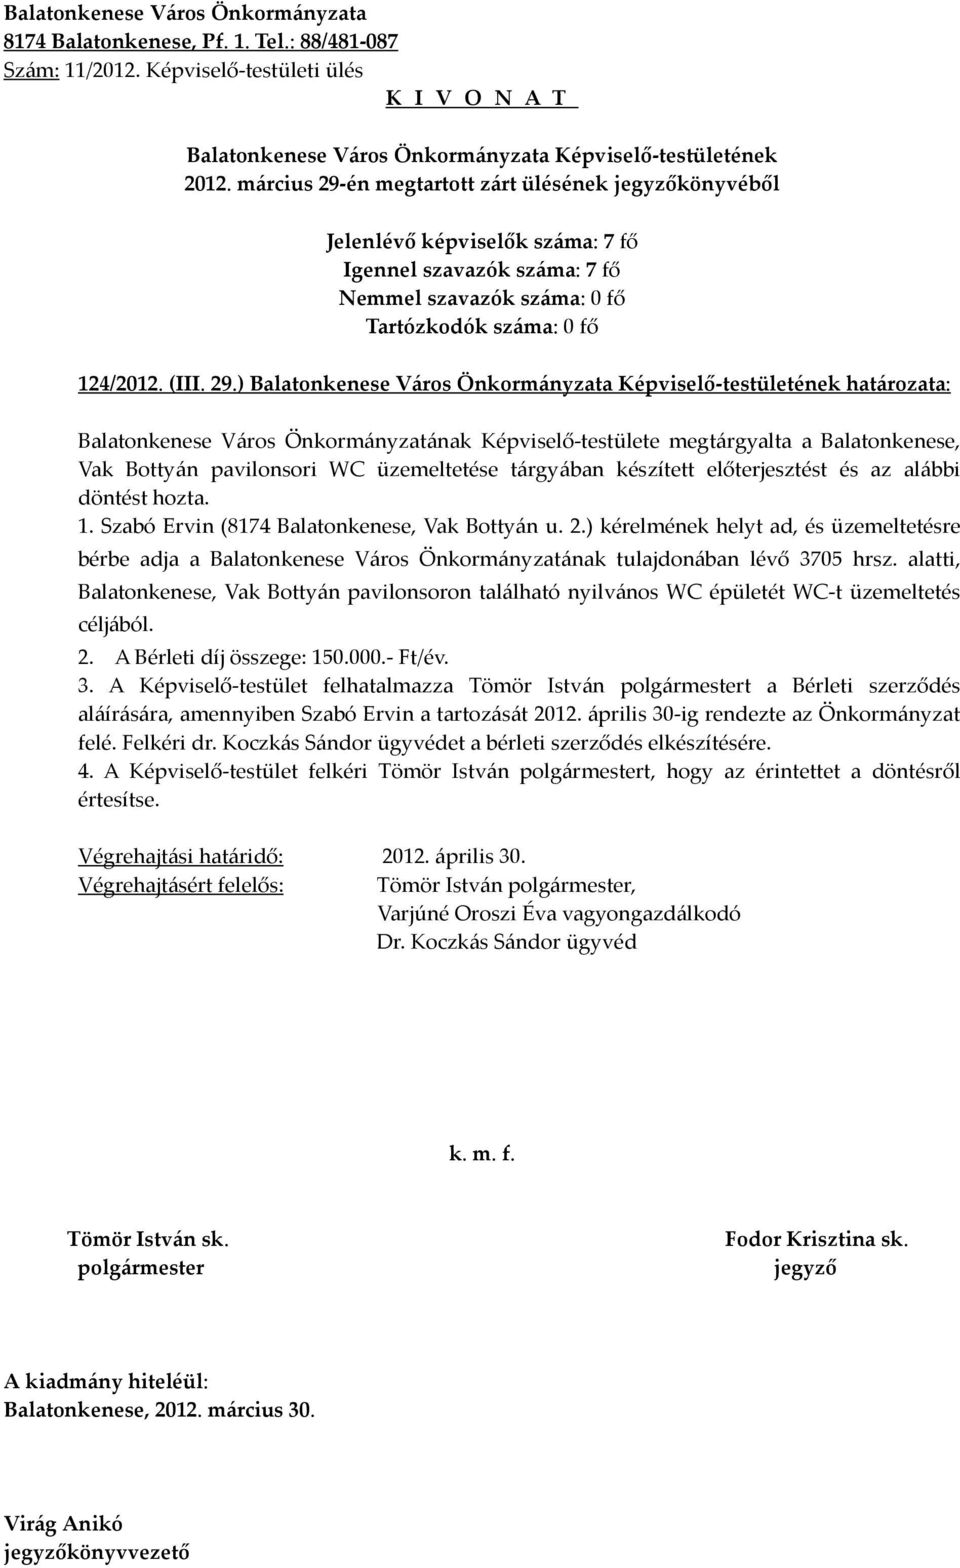 ) határozata: Balatonkenese Város Önkormányzatának Képviselő-testülete megtárgyalta a Balatonkenese, Vak Bottyán pavilonsori WC üzemeltetése tárgyában készített előterjesztést és az alábbi döntést